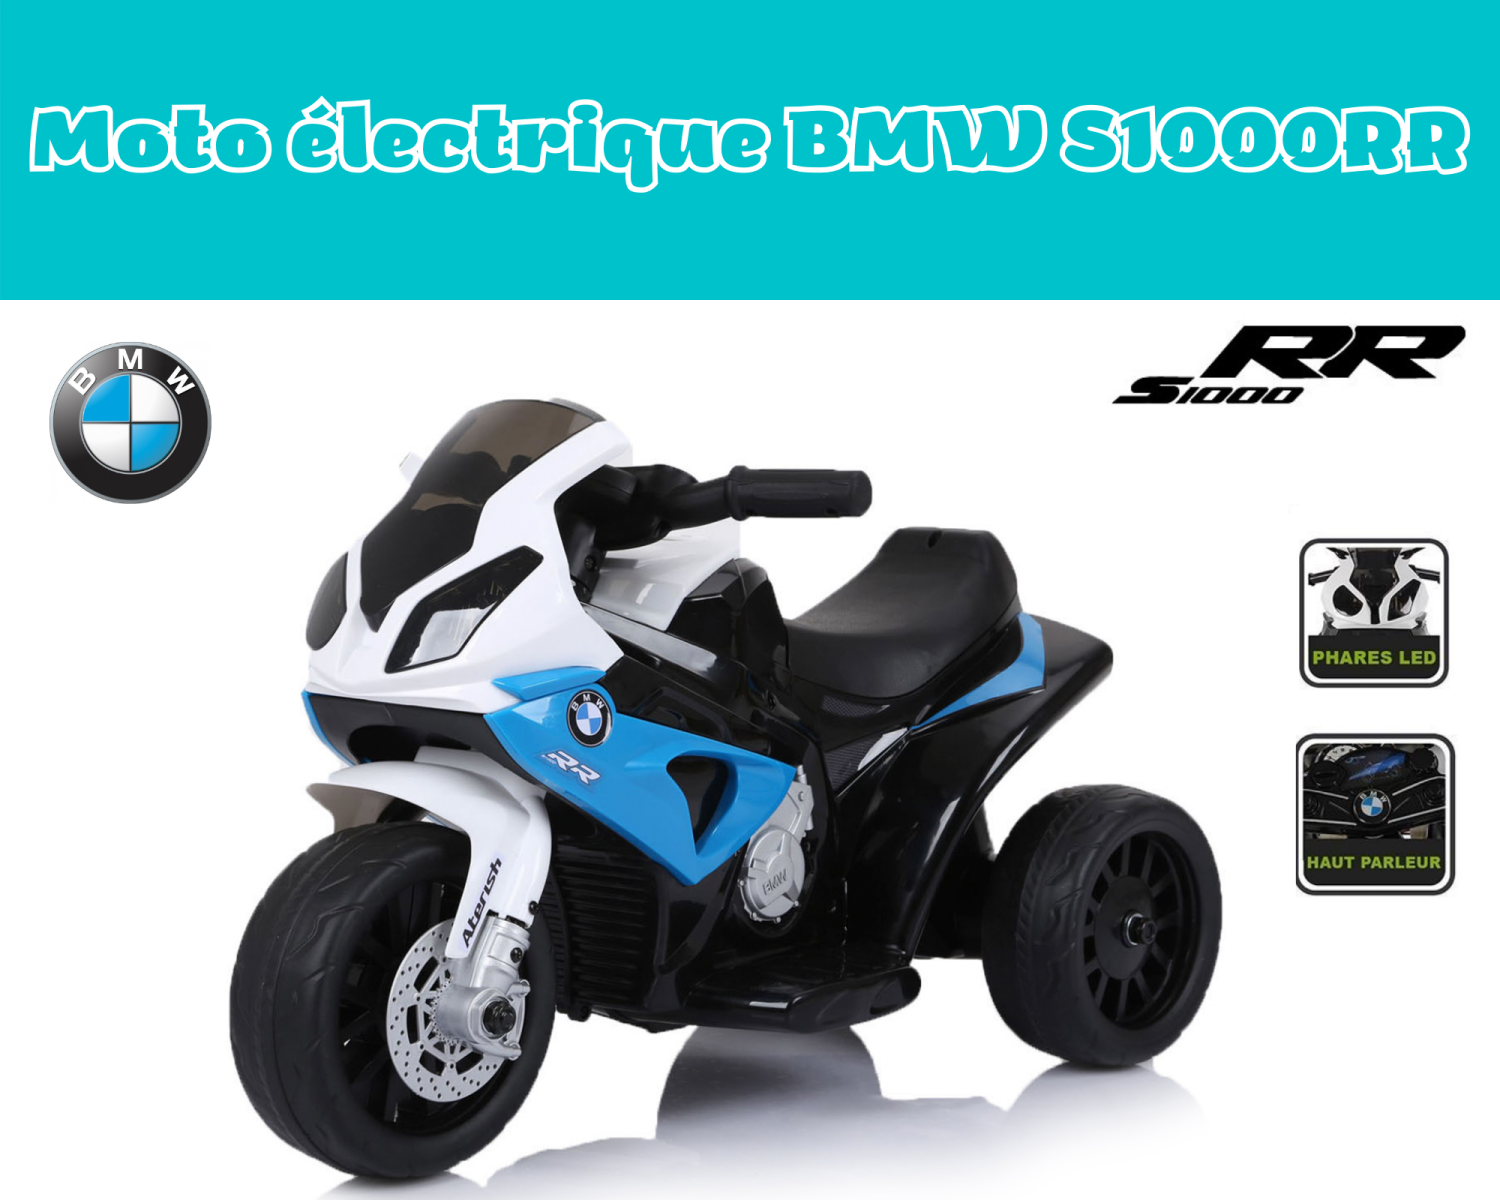 Moto électrique BMW S1000RR - Bleu ELMBMWS03BL : Magasin de puériculture et  jouets de naissance : poussette et landau , cadeau de naissance